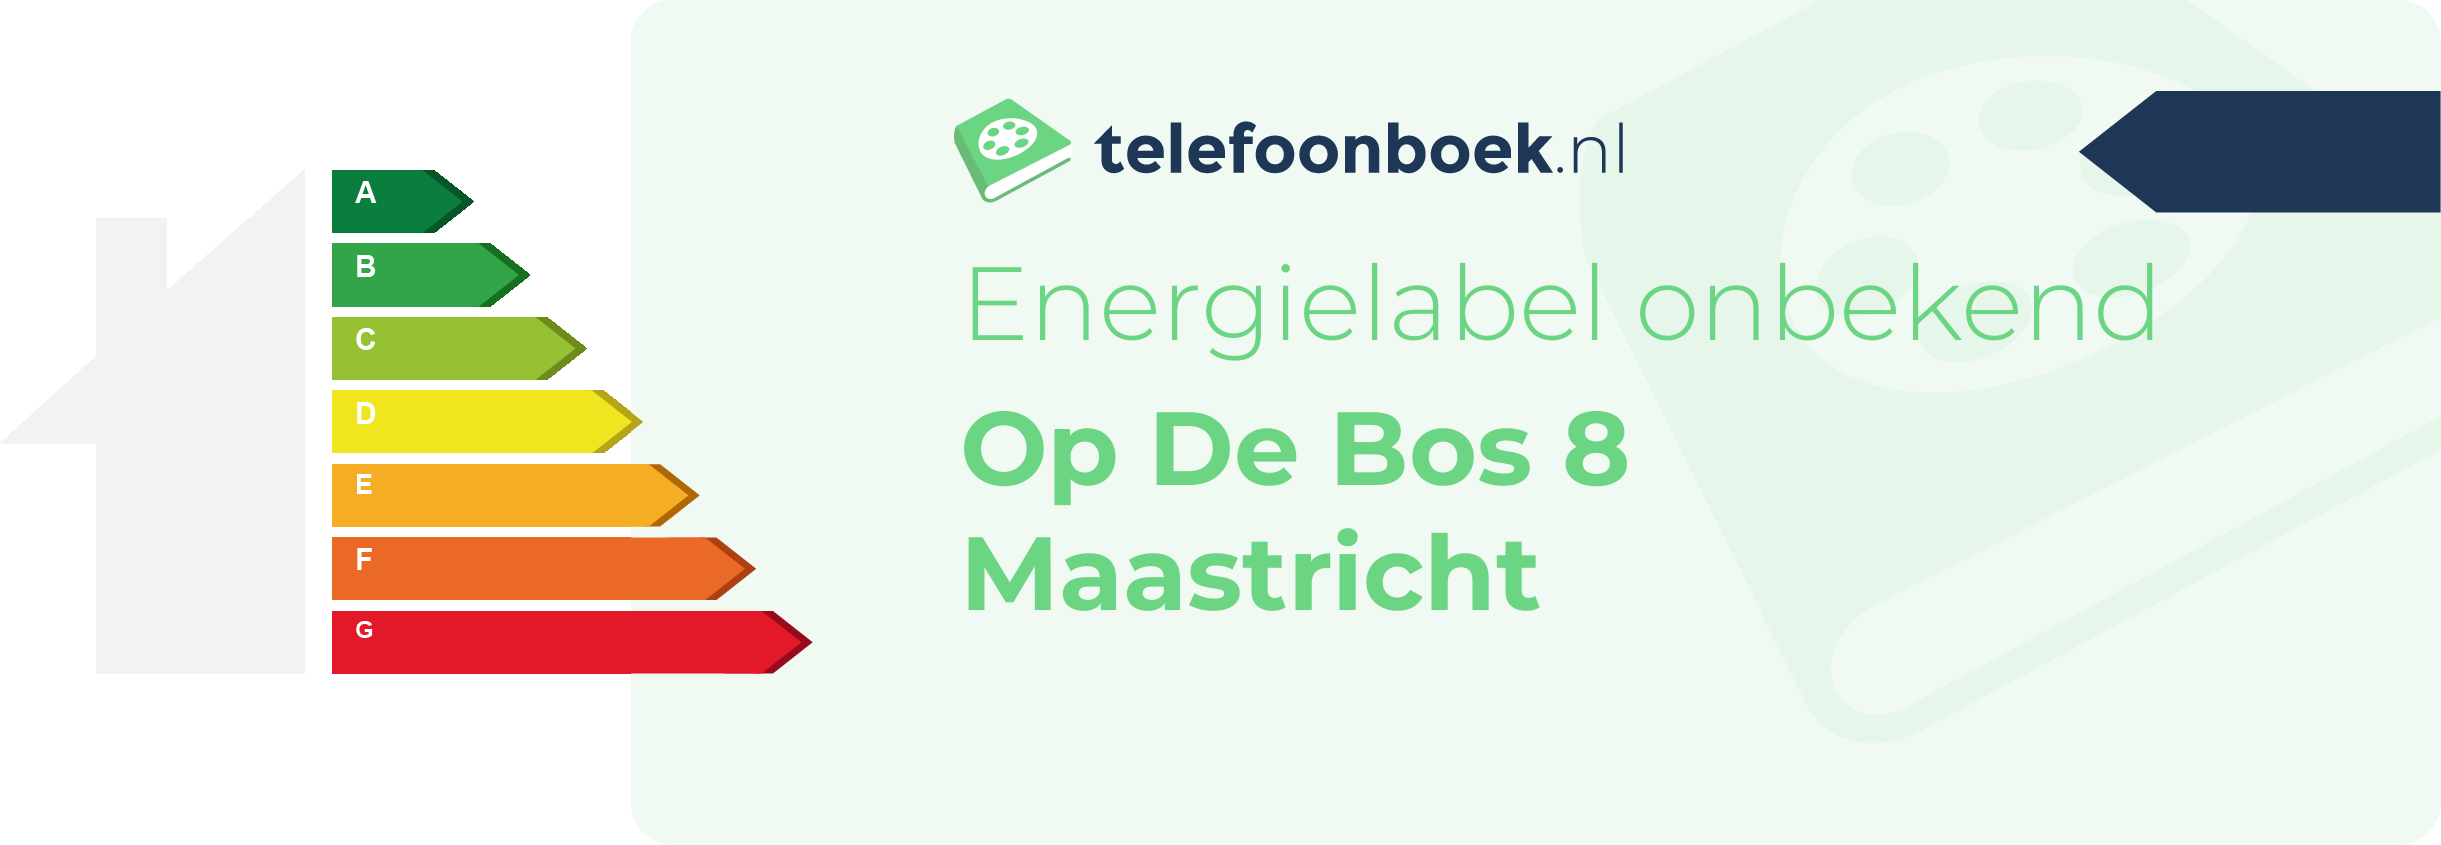 Energielabel Op De Bos 8 Maastricht